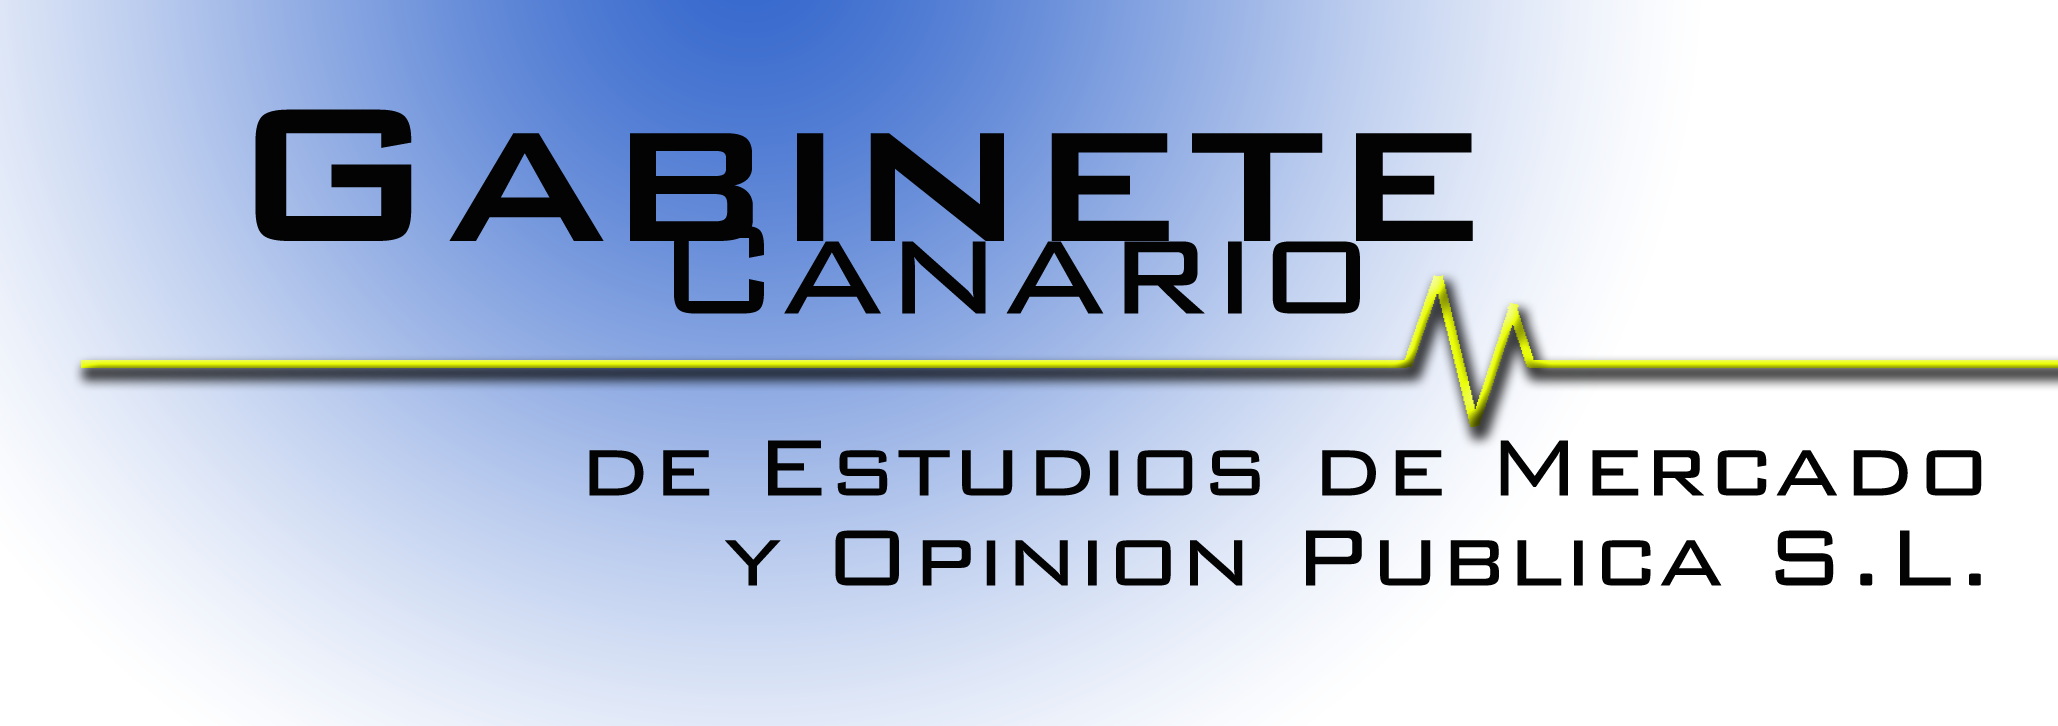 Gabinete Canario de Estudios de Mercados y Opinión Publica Pública